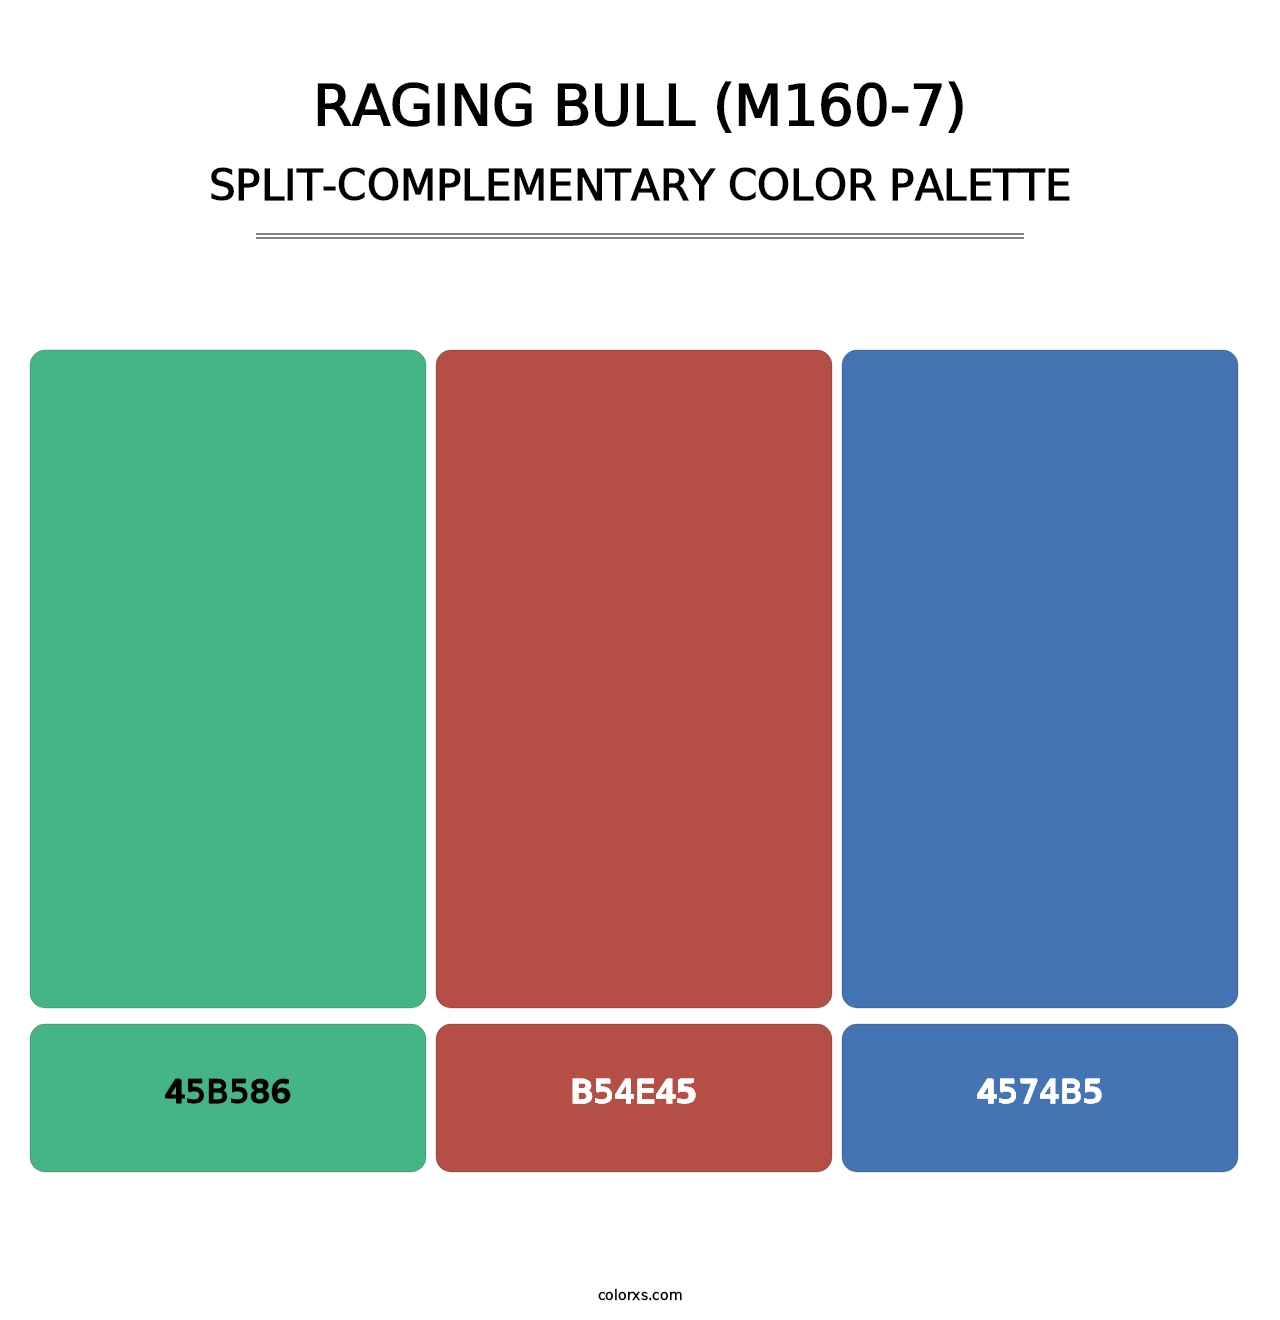 Raging Bull (M160-7) - Split-Complementary Color Palette